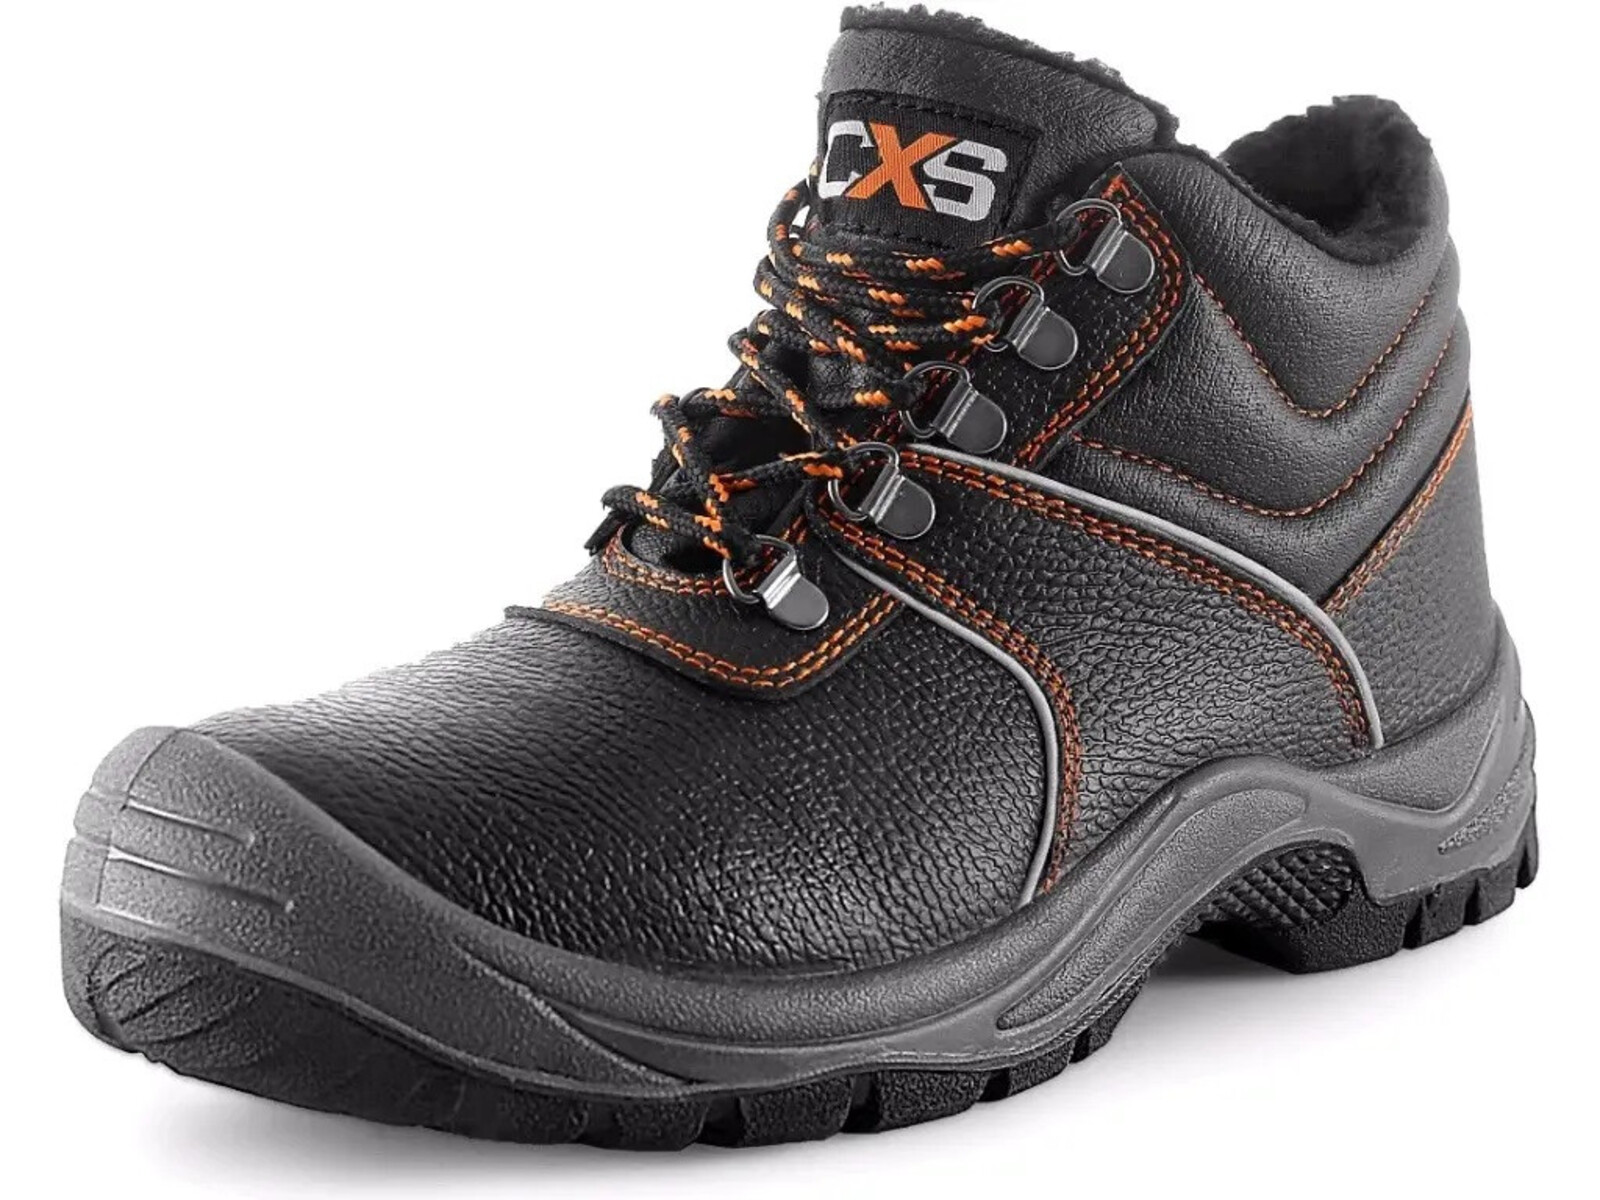 Zimná pracovná členková obuv CXS Stone Apatit Winter O2 FO SRC - veľkosť: 40, farba: čierna/oranžová